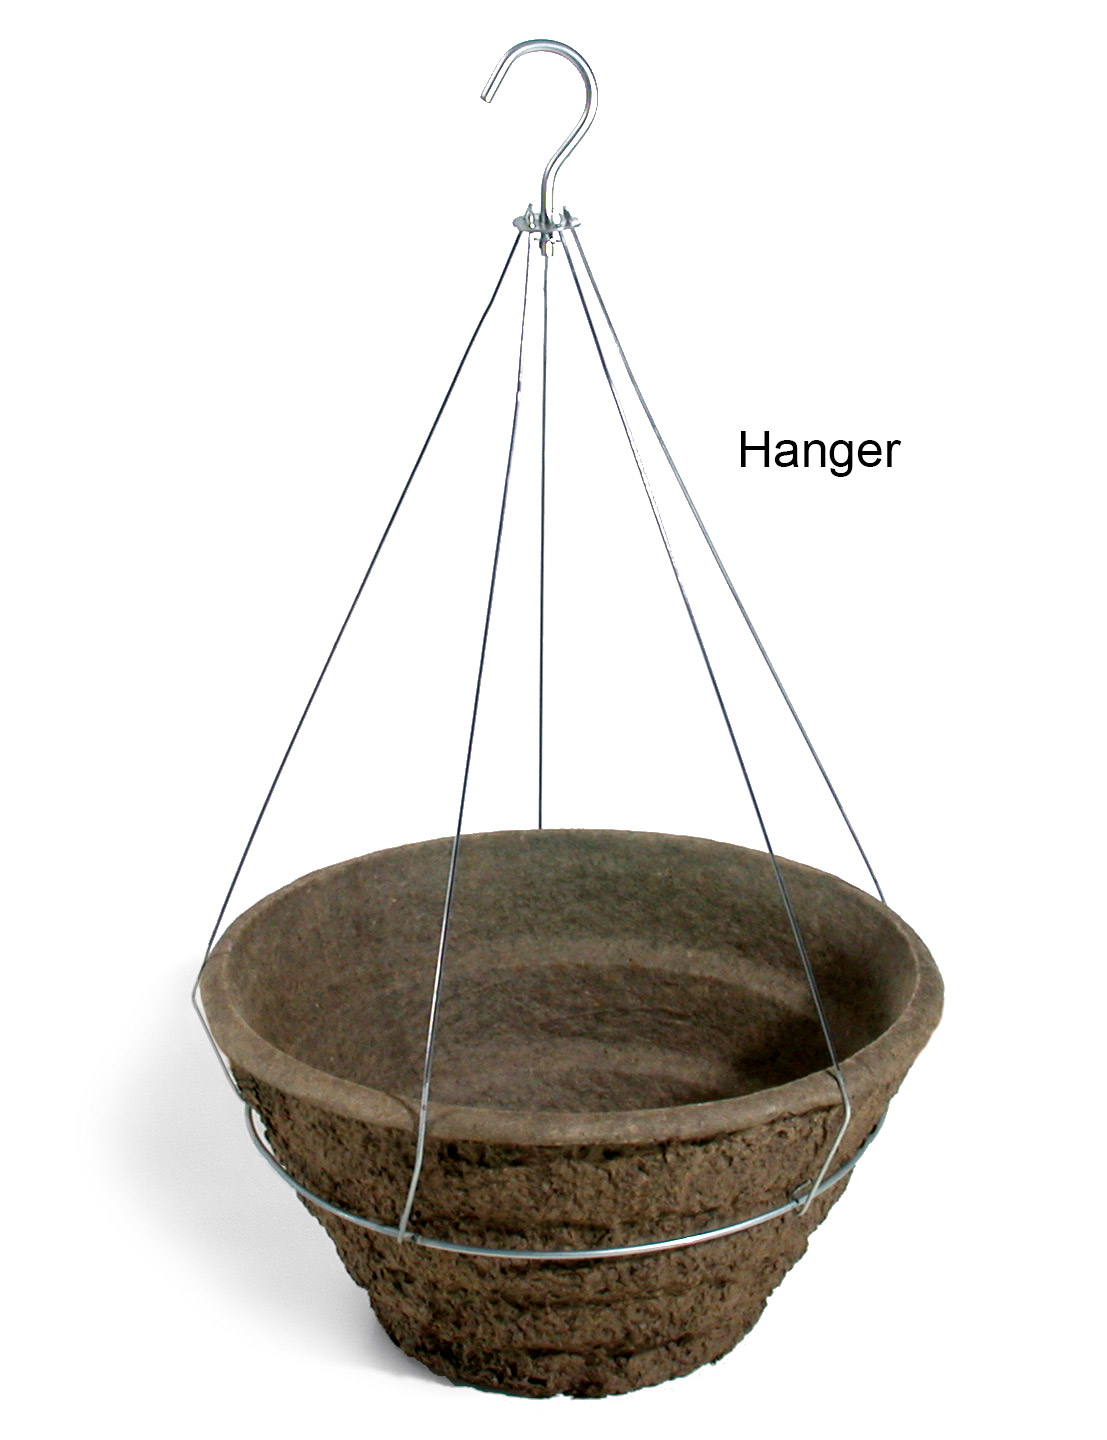 16 Garden Basket Hanger 20/case - Hangers